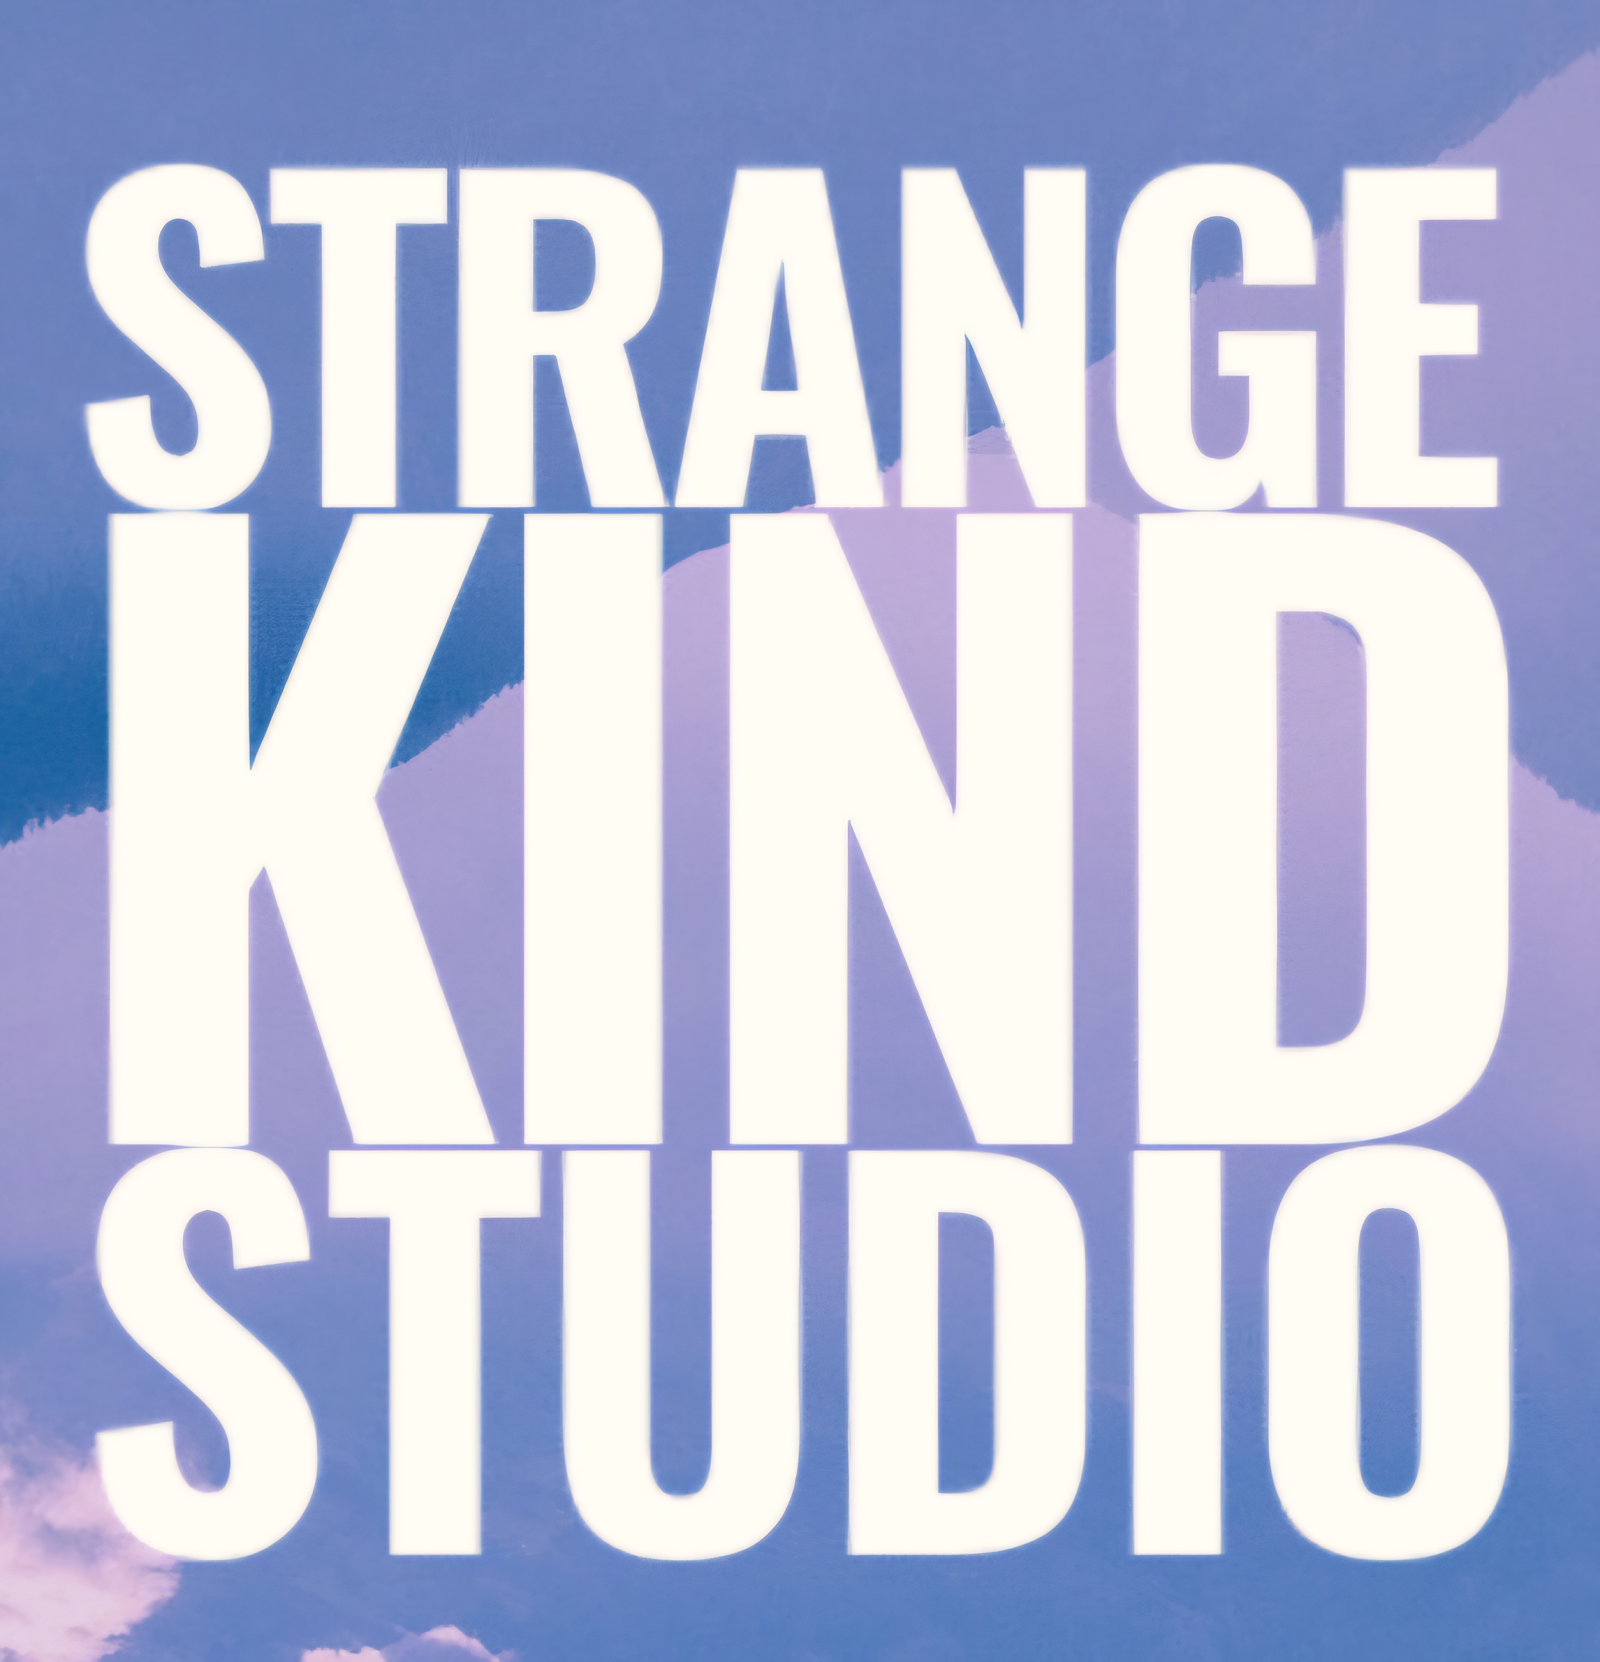 Strangekind Studio